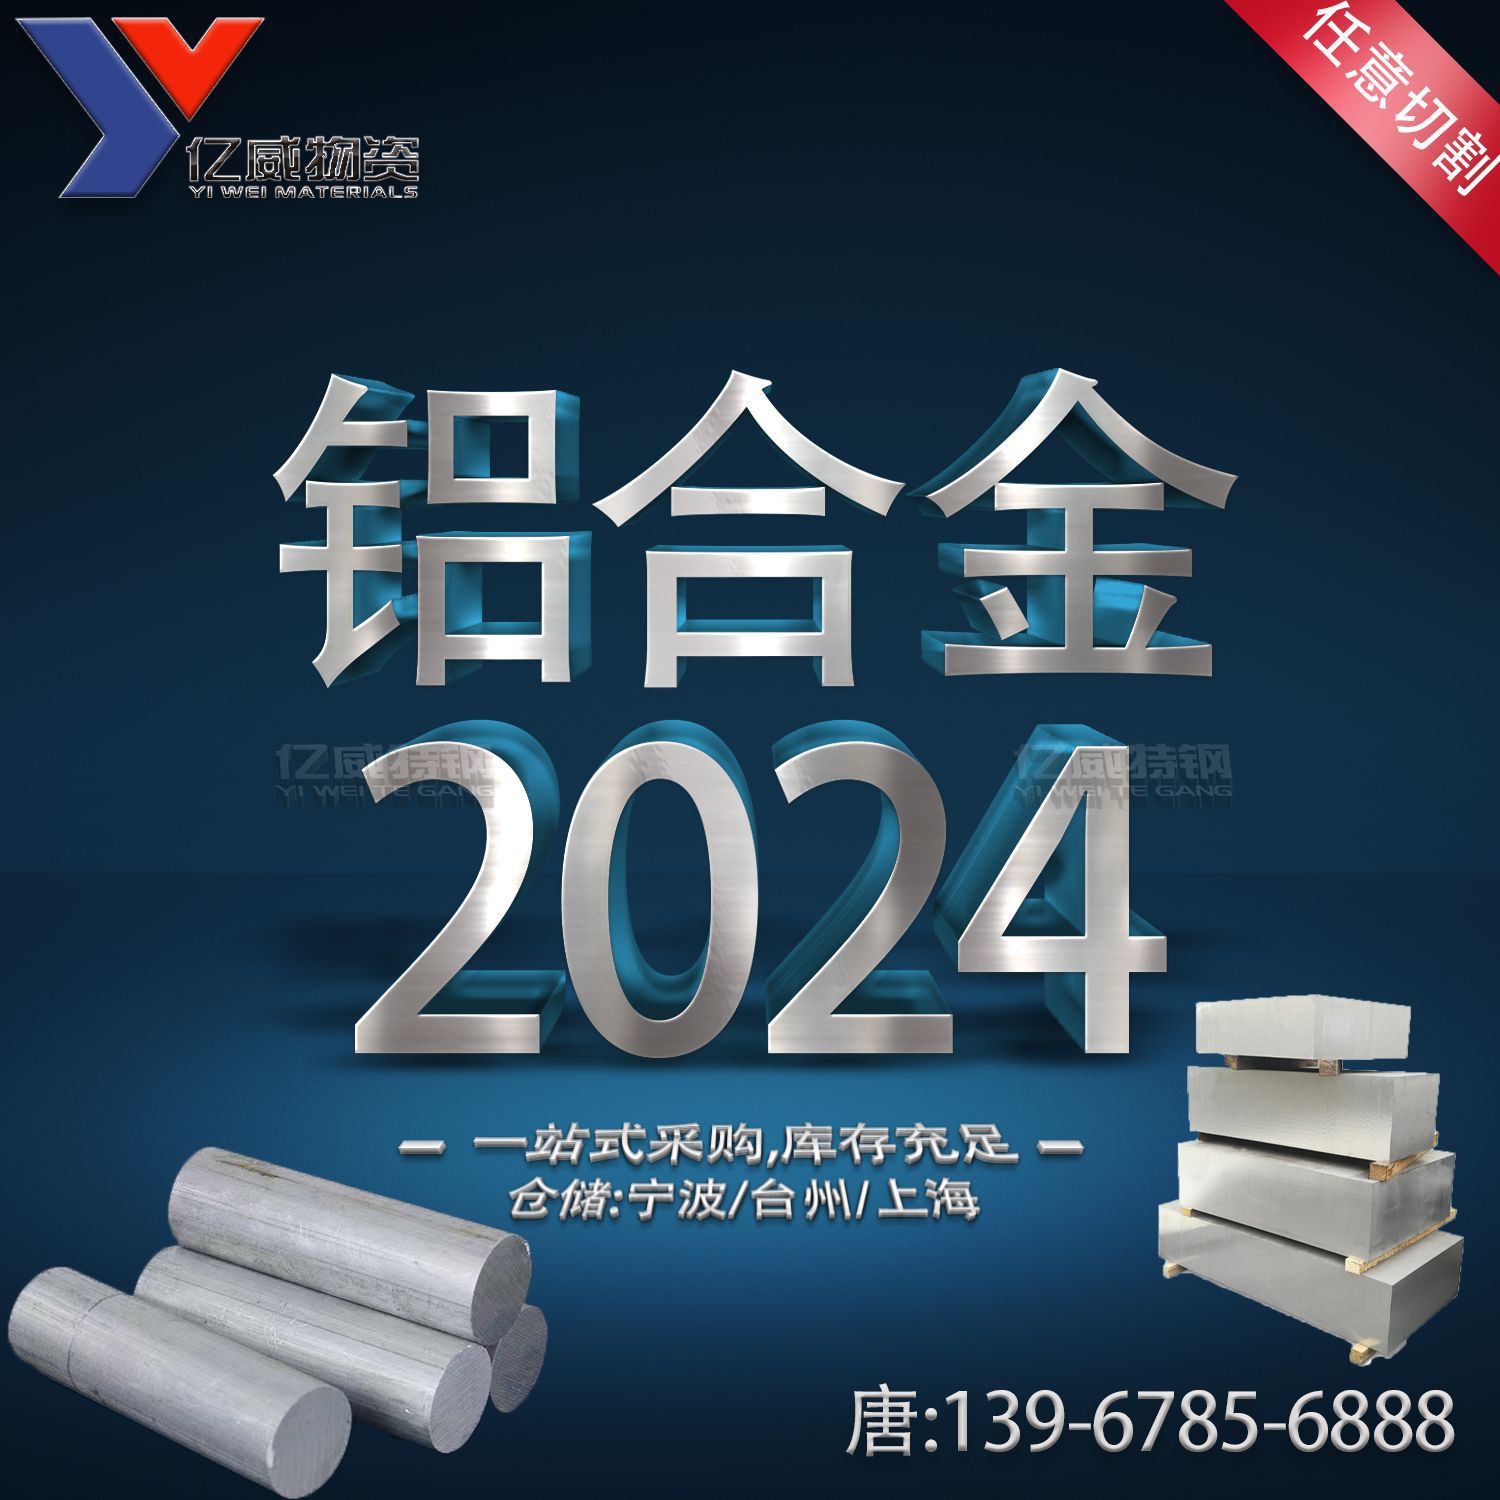 宁波供应西南铝2024铝板用材2024硬铝合金板材可激光切割价格优惠